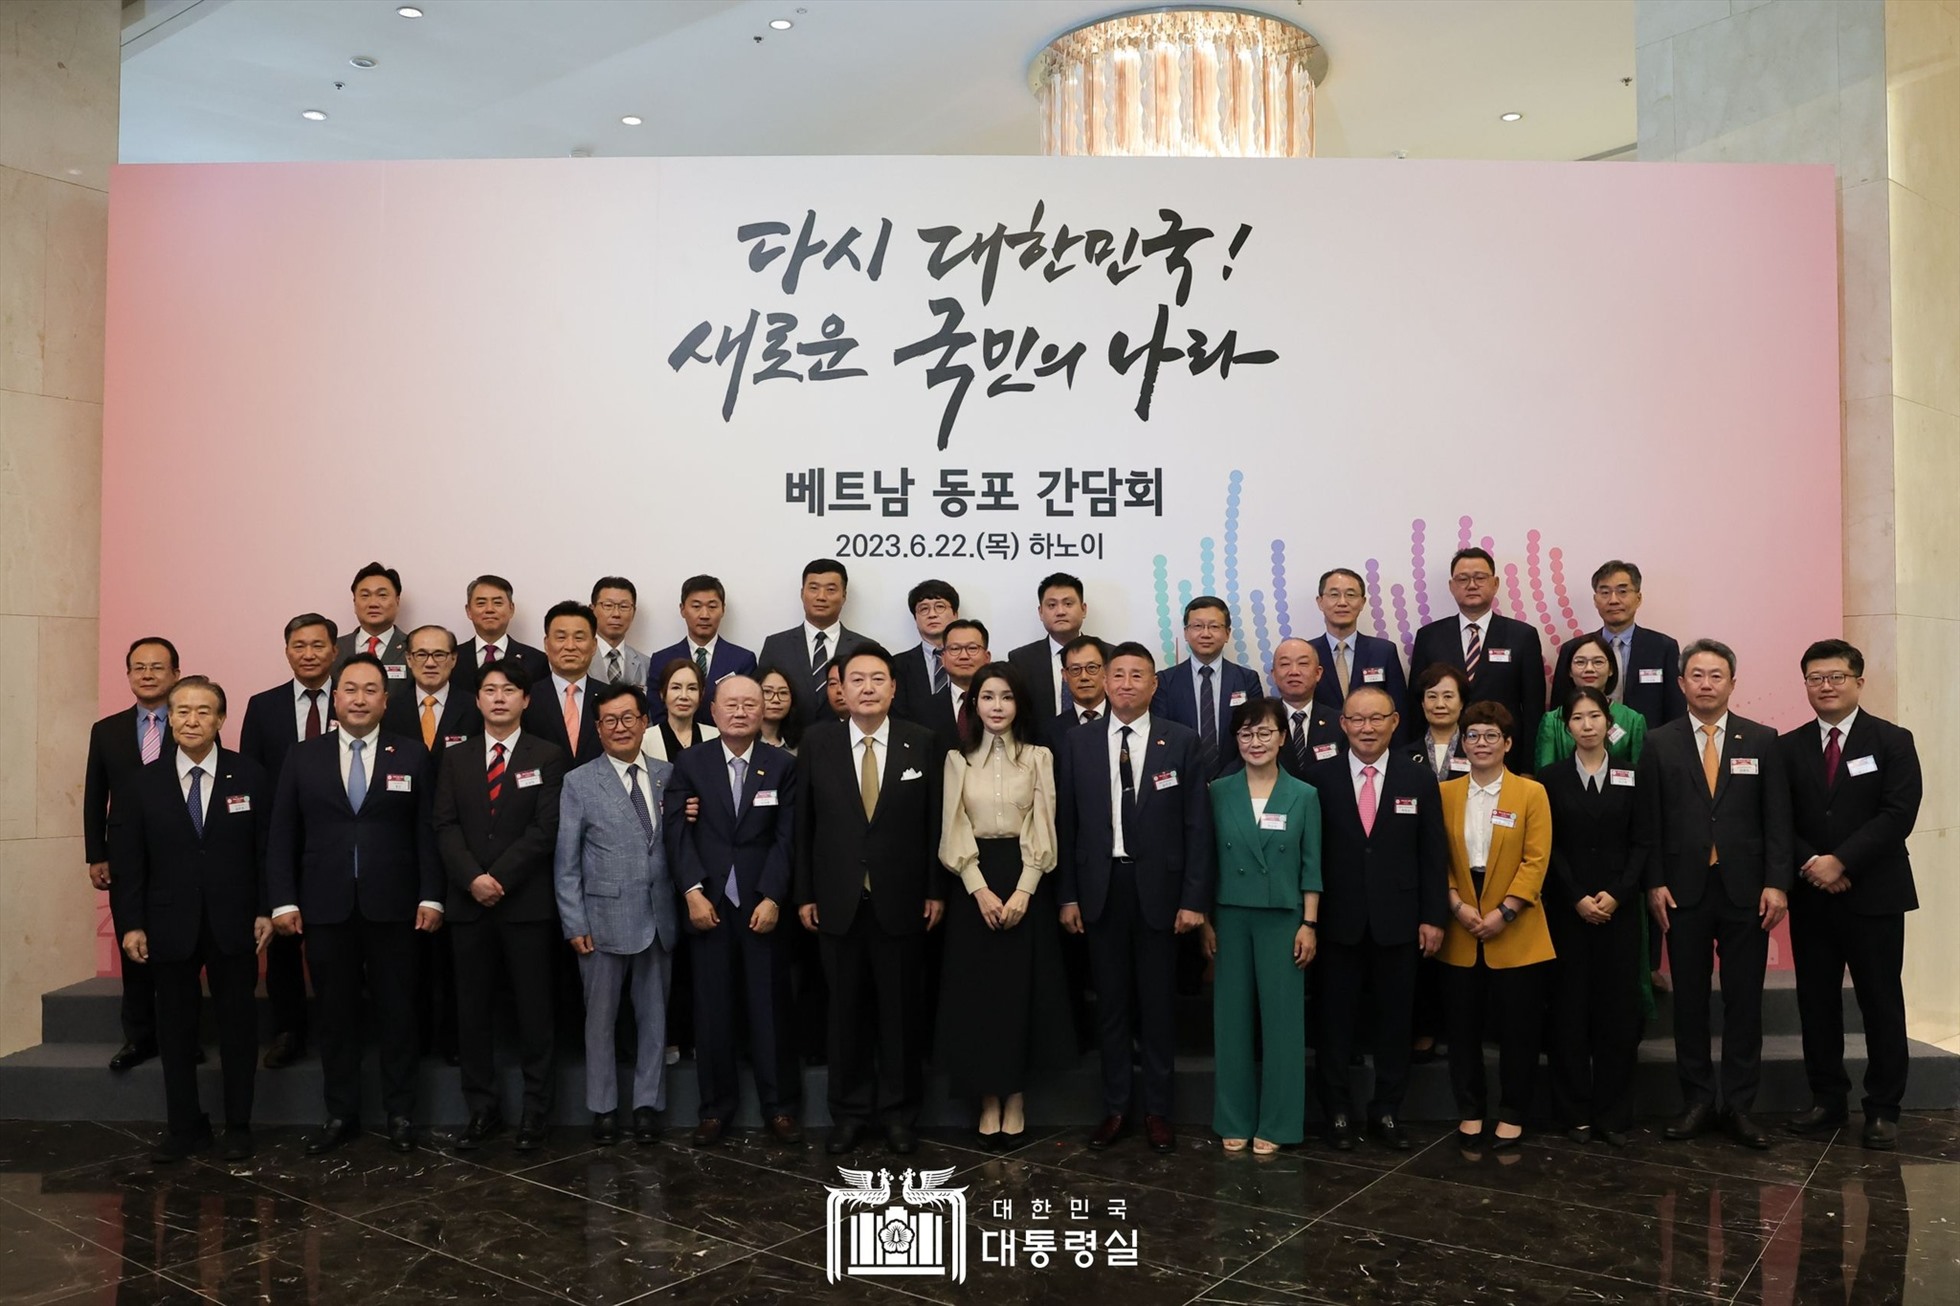 Tổng thống Yoon Suk Yeol và Phu nhân trong cuộc gặp gỡ đại diện cộng đồng người Hàn Quốc đã và đang sống, làm việc tại Việt Nam. Ảnh: Đại sứ quán Hàn Quốc